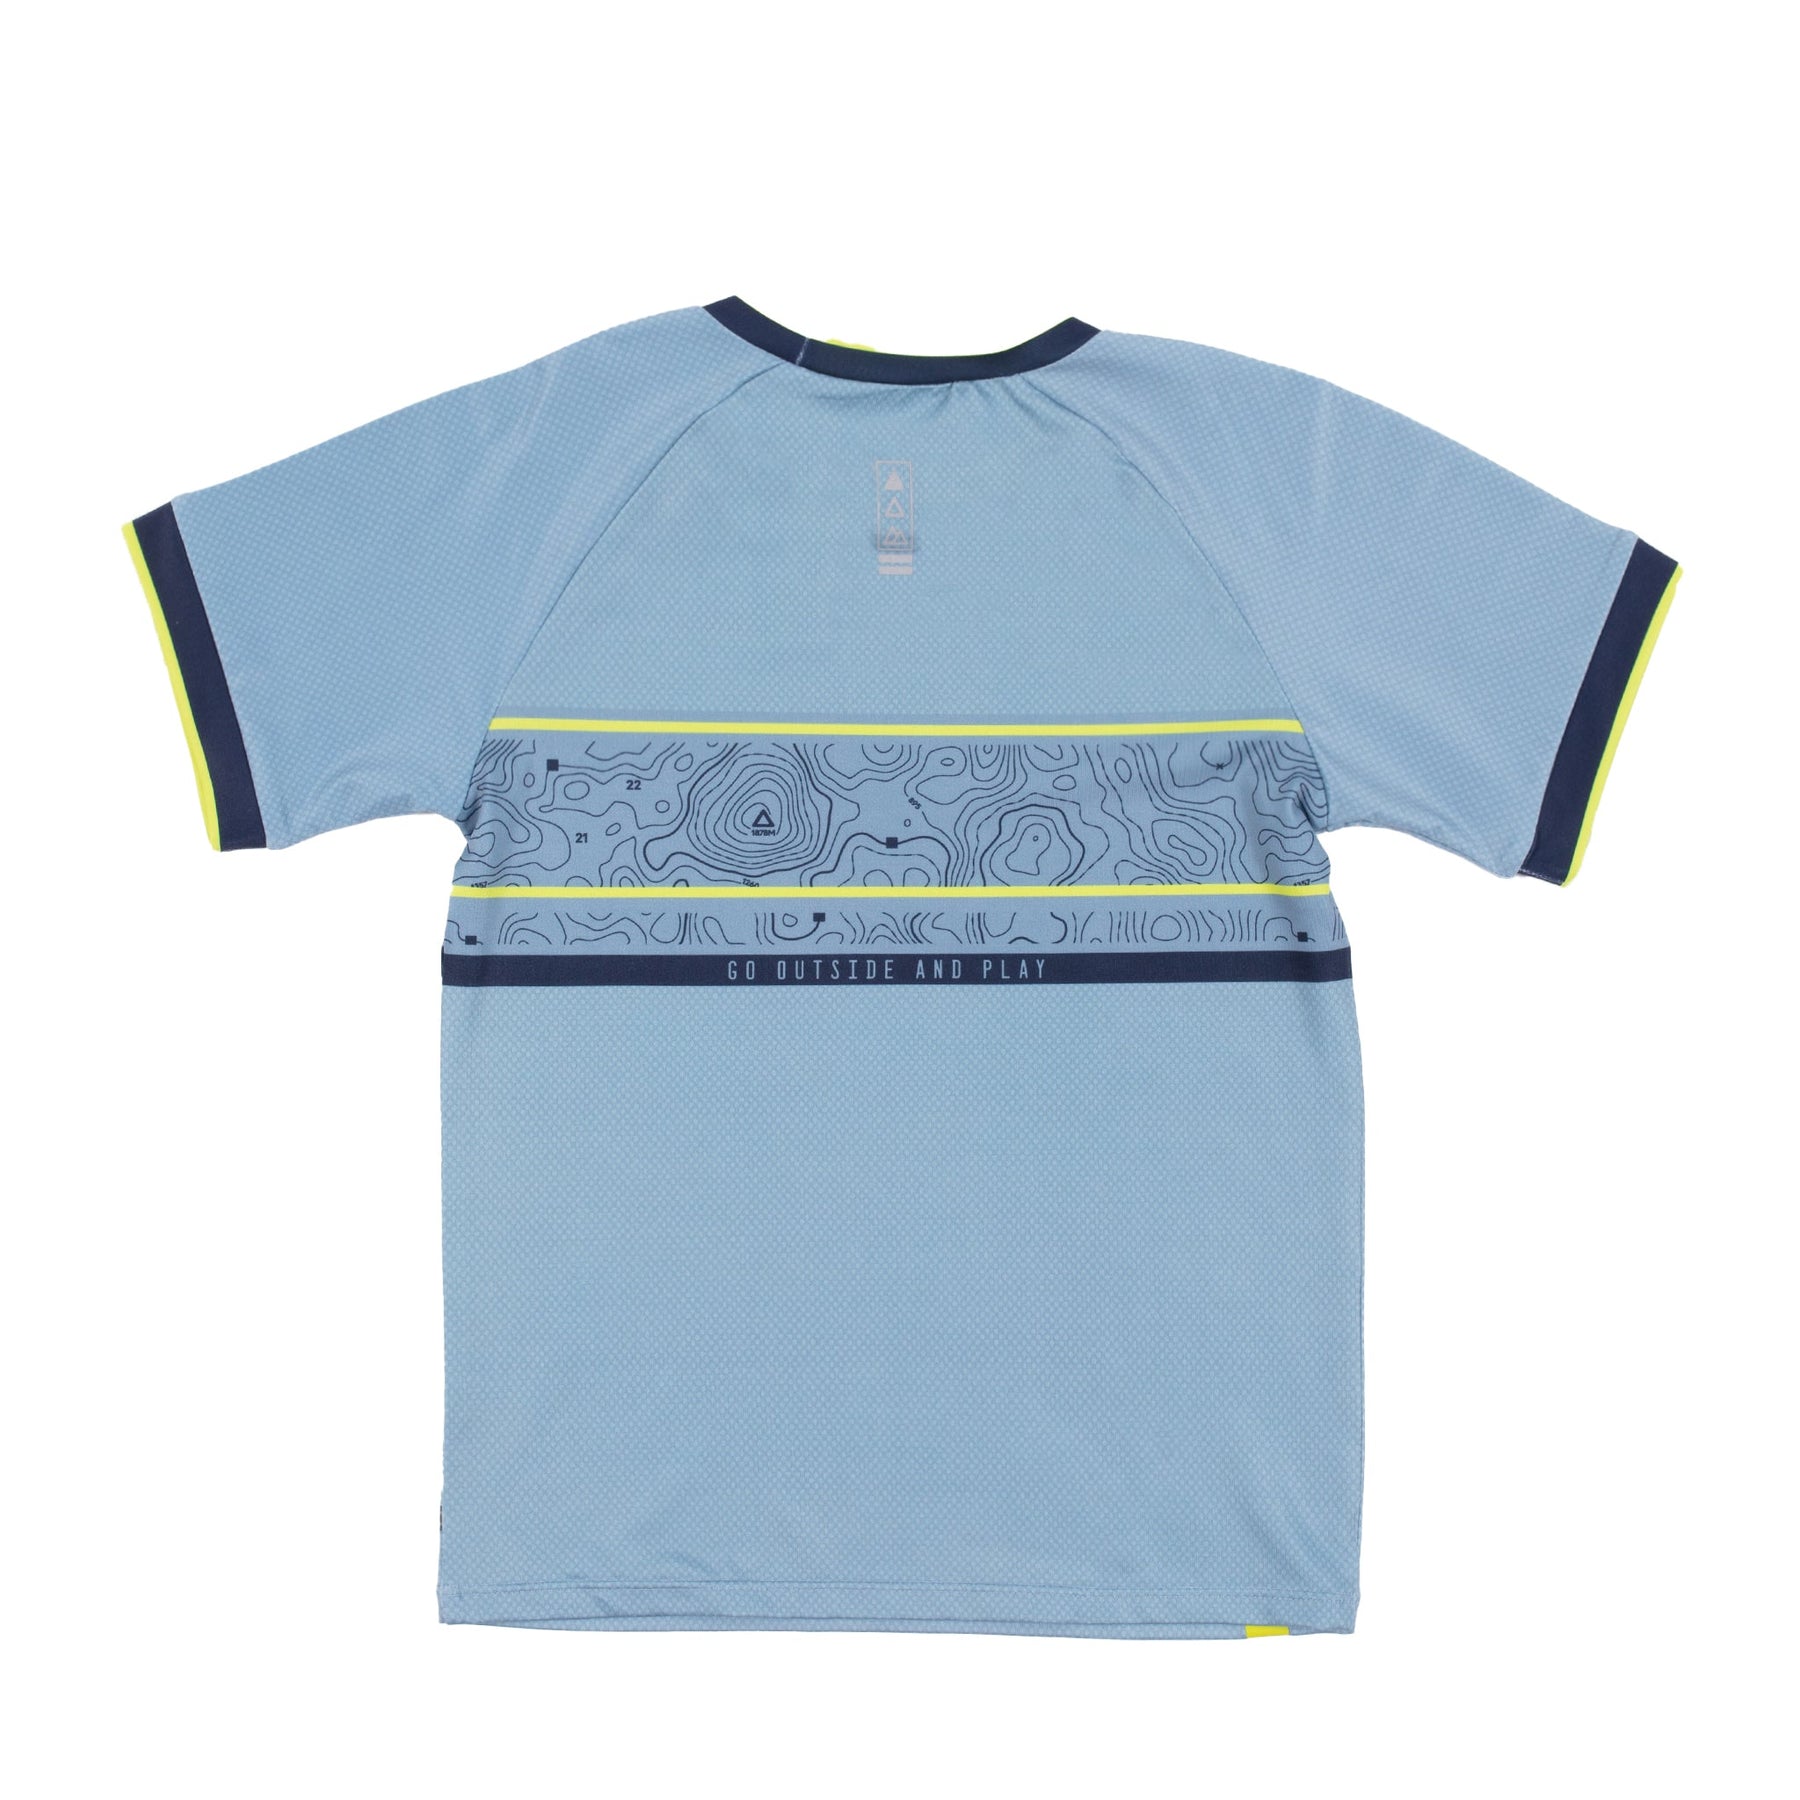 T-shirt athlétique pour enfant garçon par Nanö | F22A81-02 Turquoise | Boutique Flos, vêtements mode pour bébés et enfants